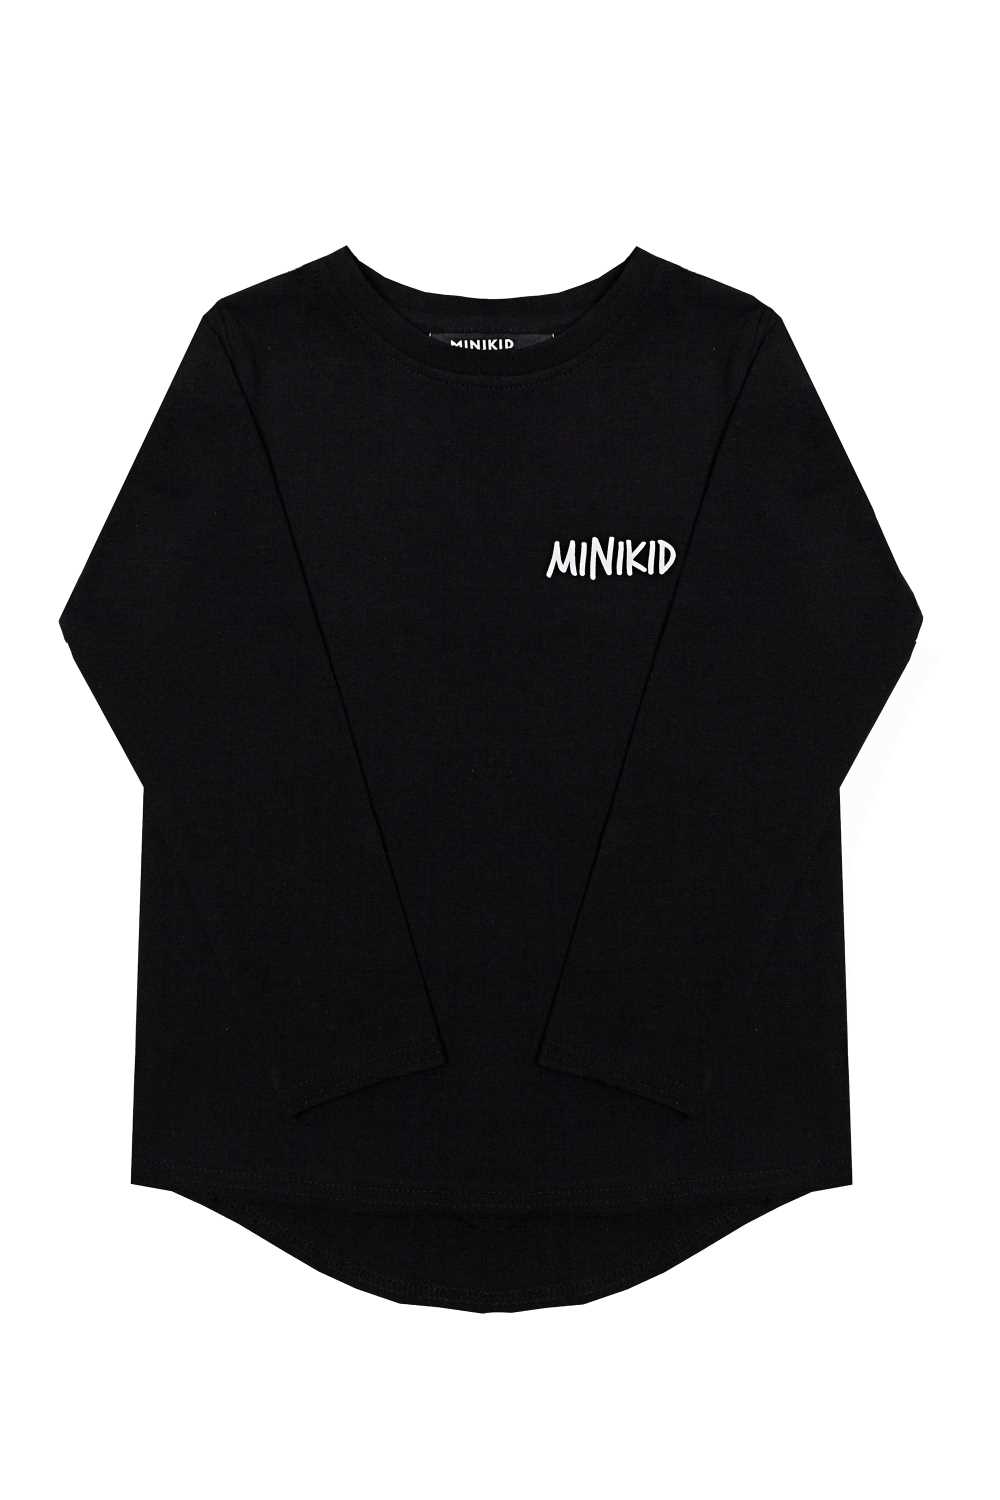 Koszulka Minikid Classics black